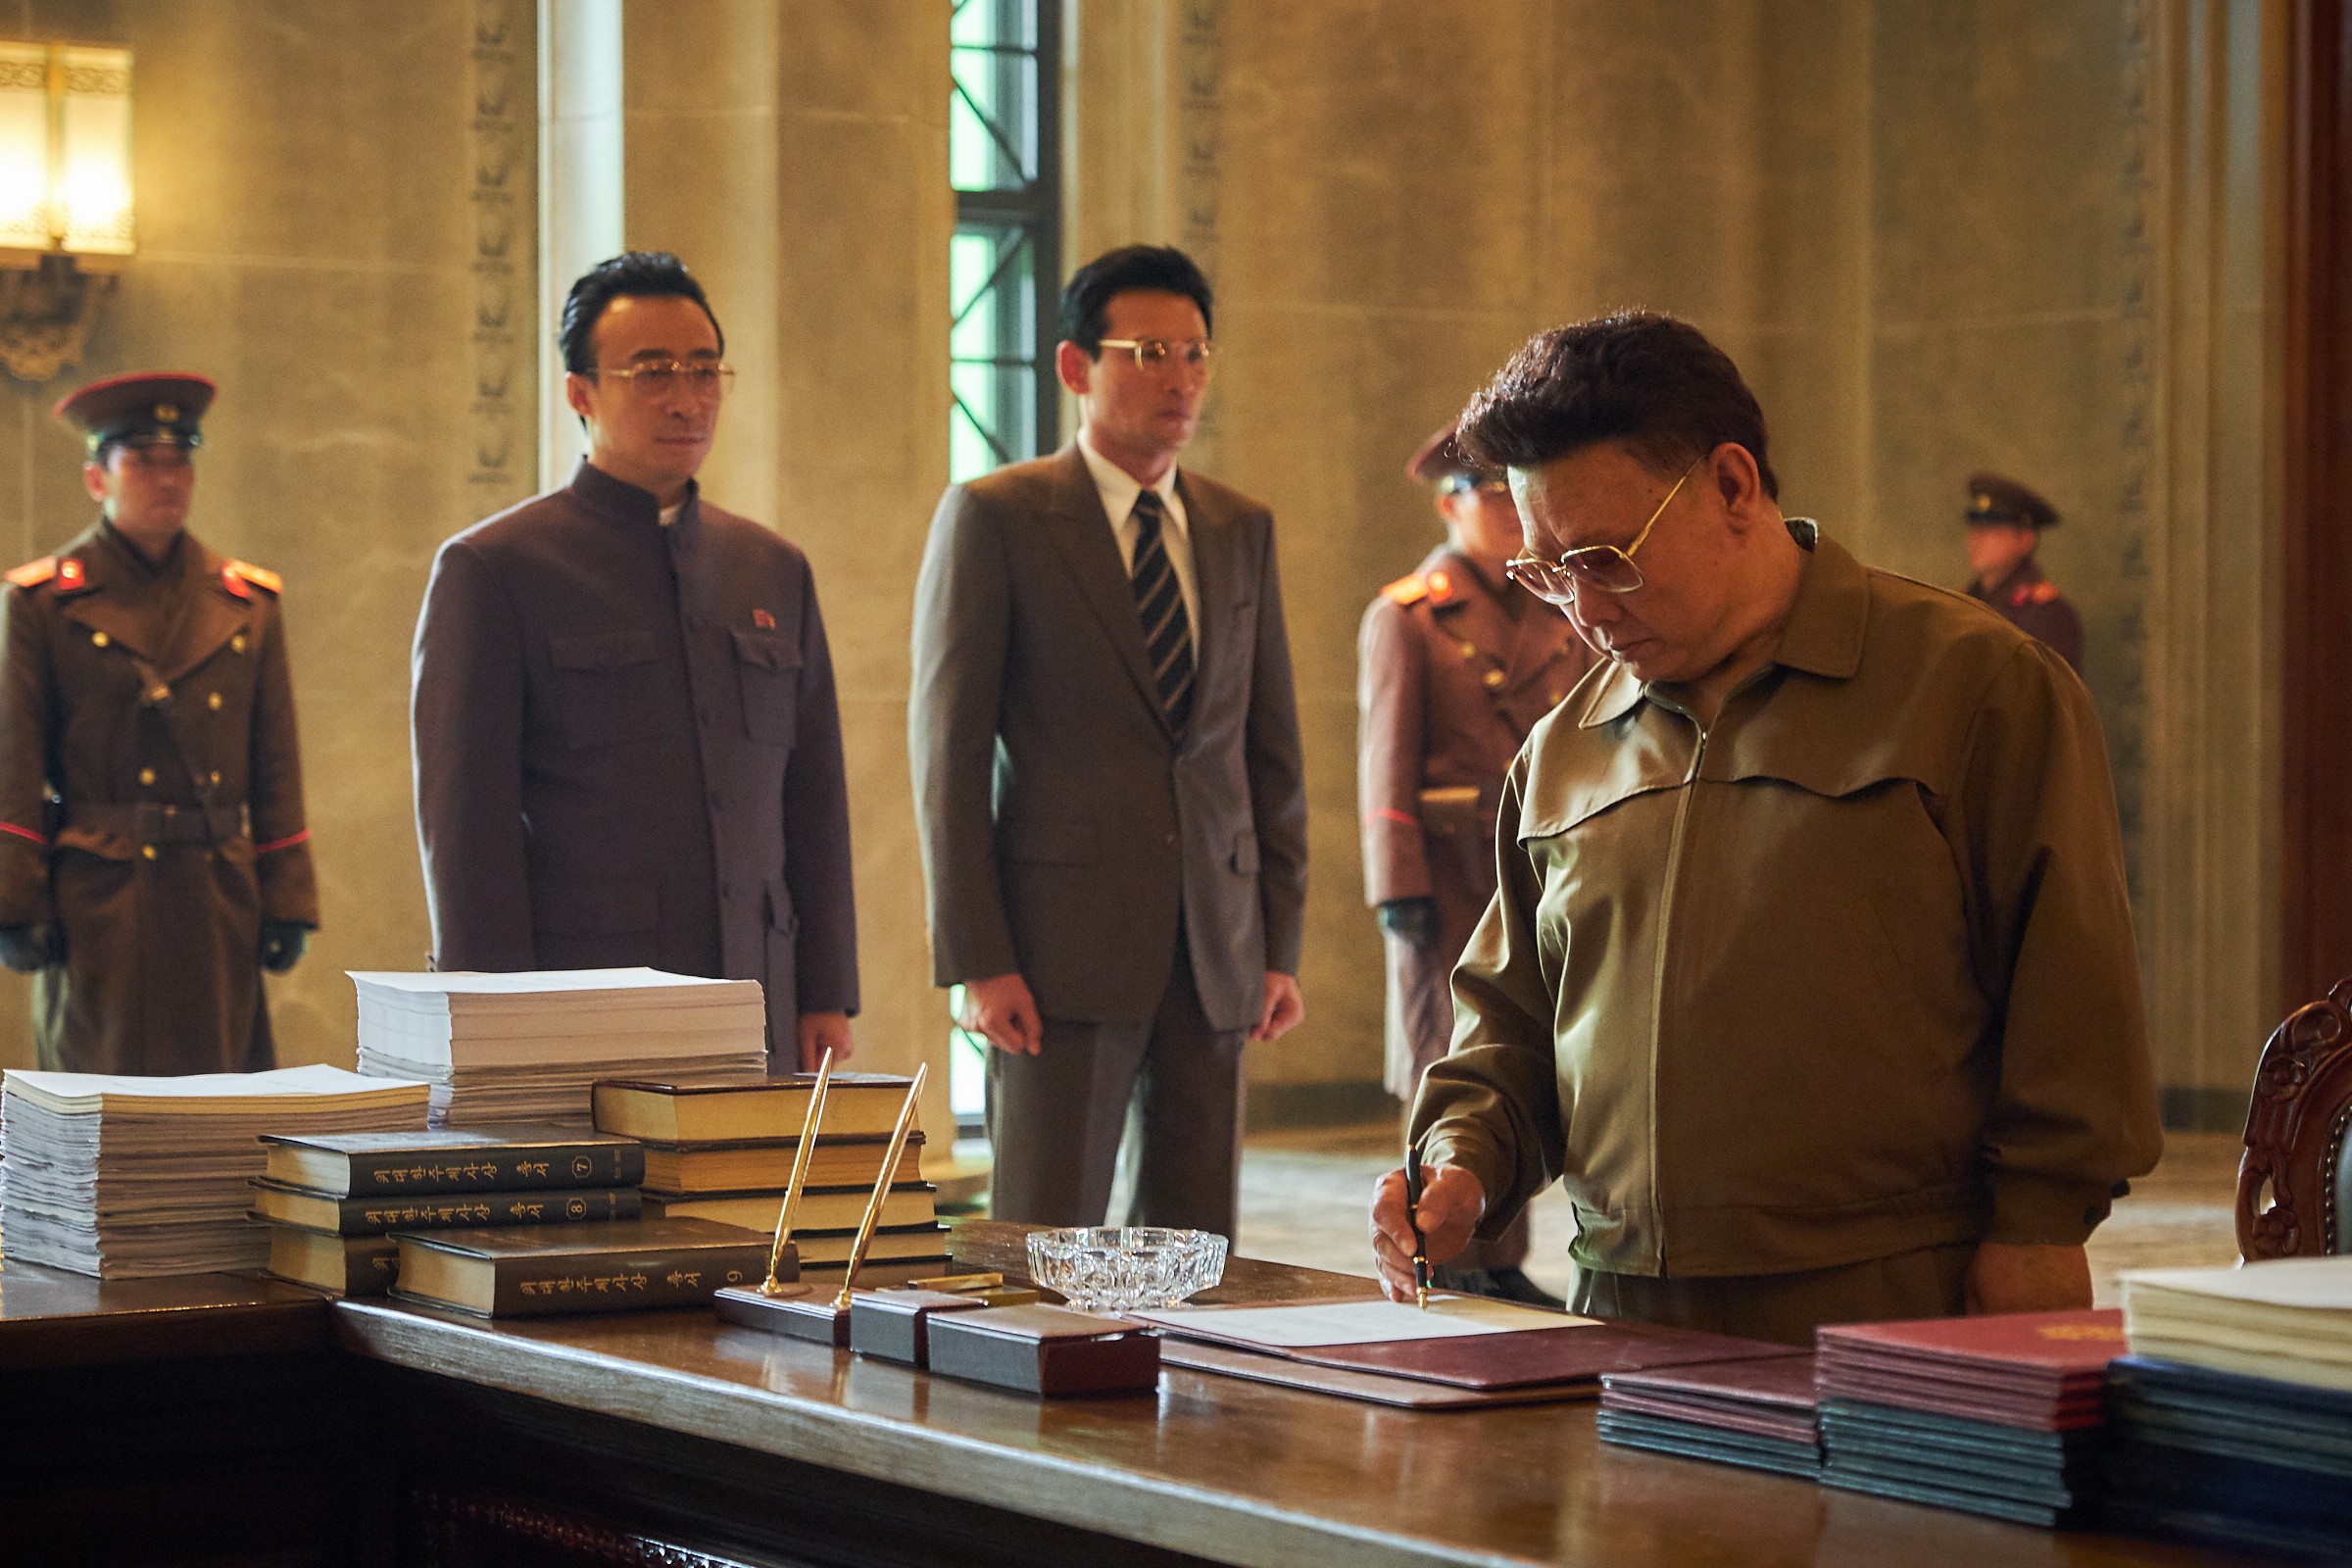 諜戰電影 北風 口碑話題延燒影評盛讚 今年至今最好看的韓國電影 Yahoo奇摩電影戲劇